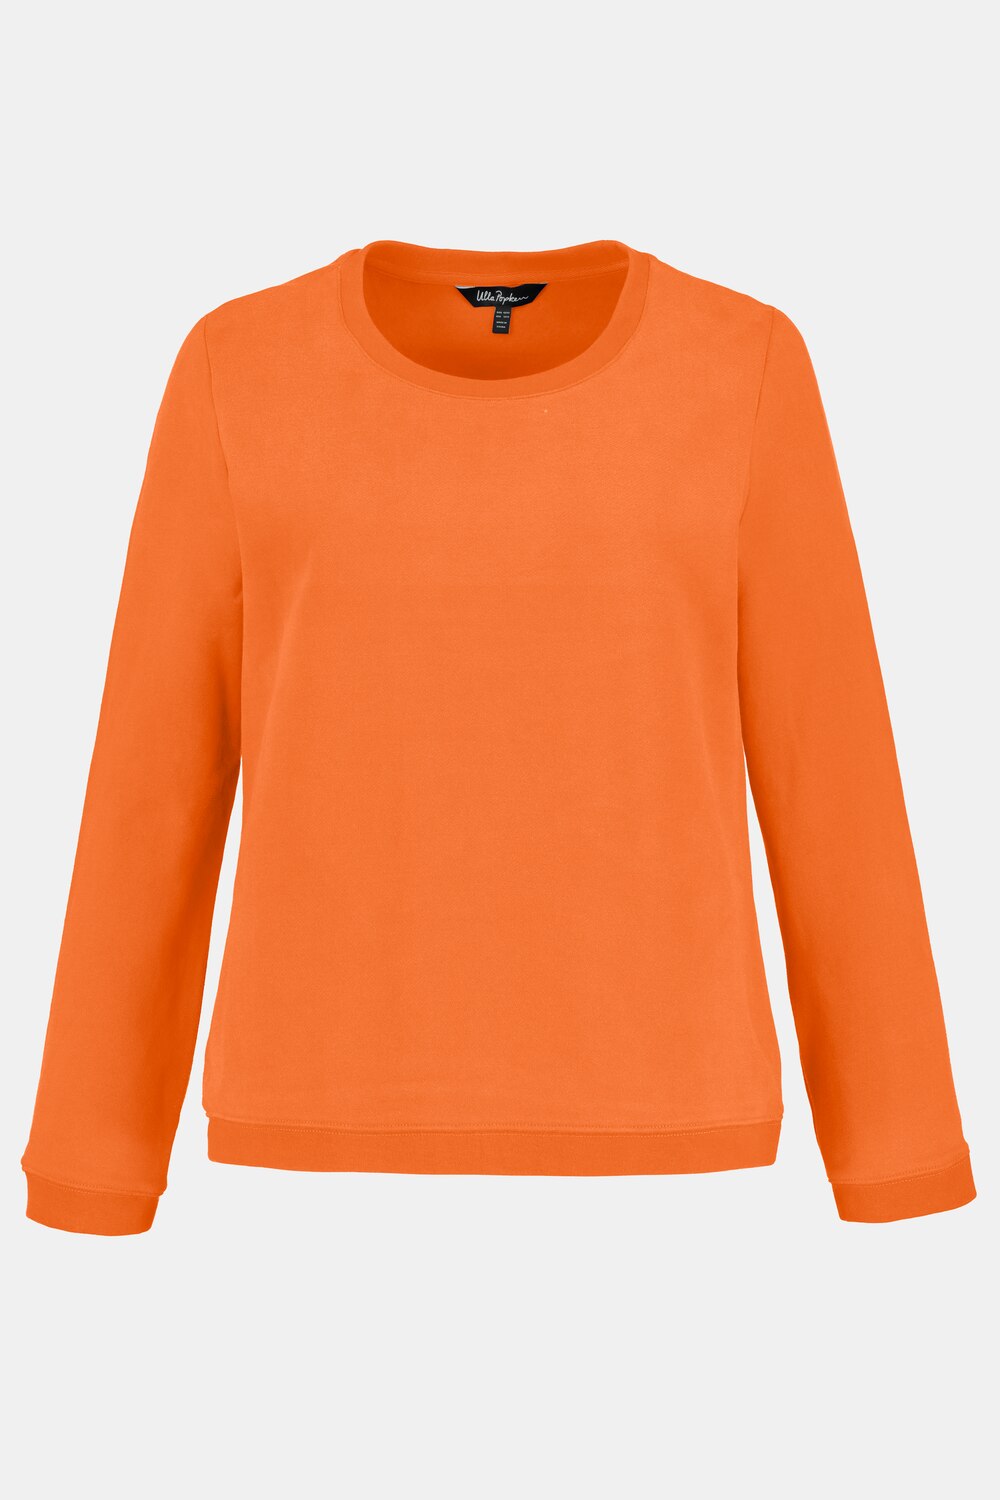 Grote Maten sweatshirt, Dames, oranje, Maat: 46/48, Katoen, Ulla Popken